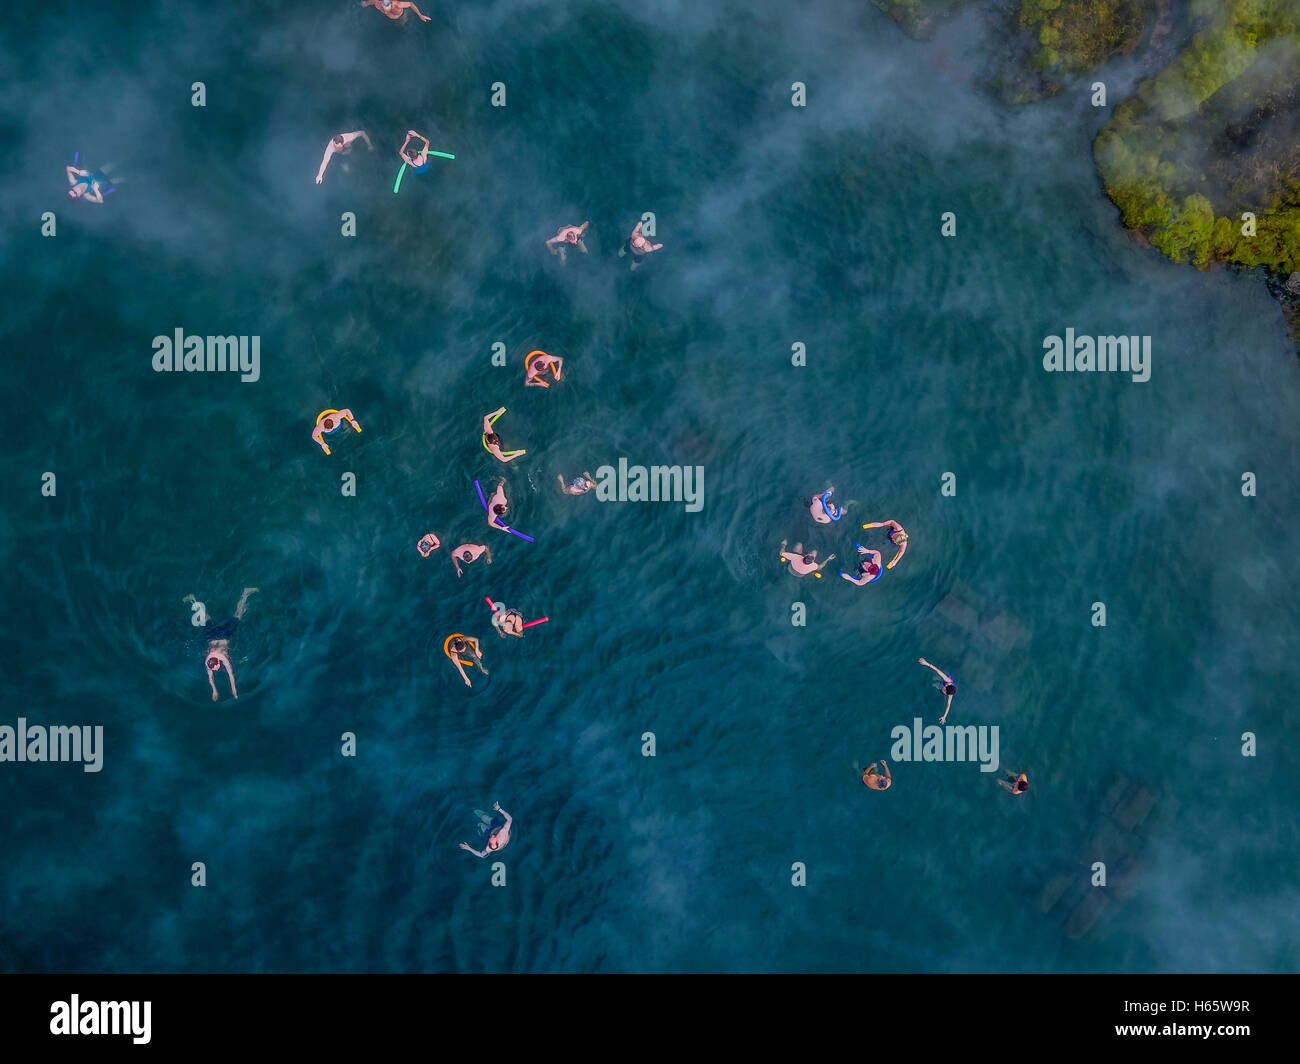 Aerial-People nageant dans une source chaude naturelle- le Secret Lagoon, Fludir, Islande Banque D'Images